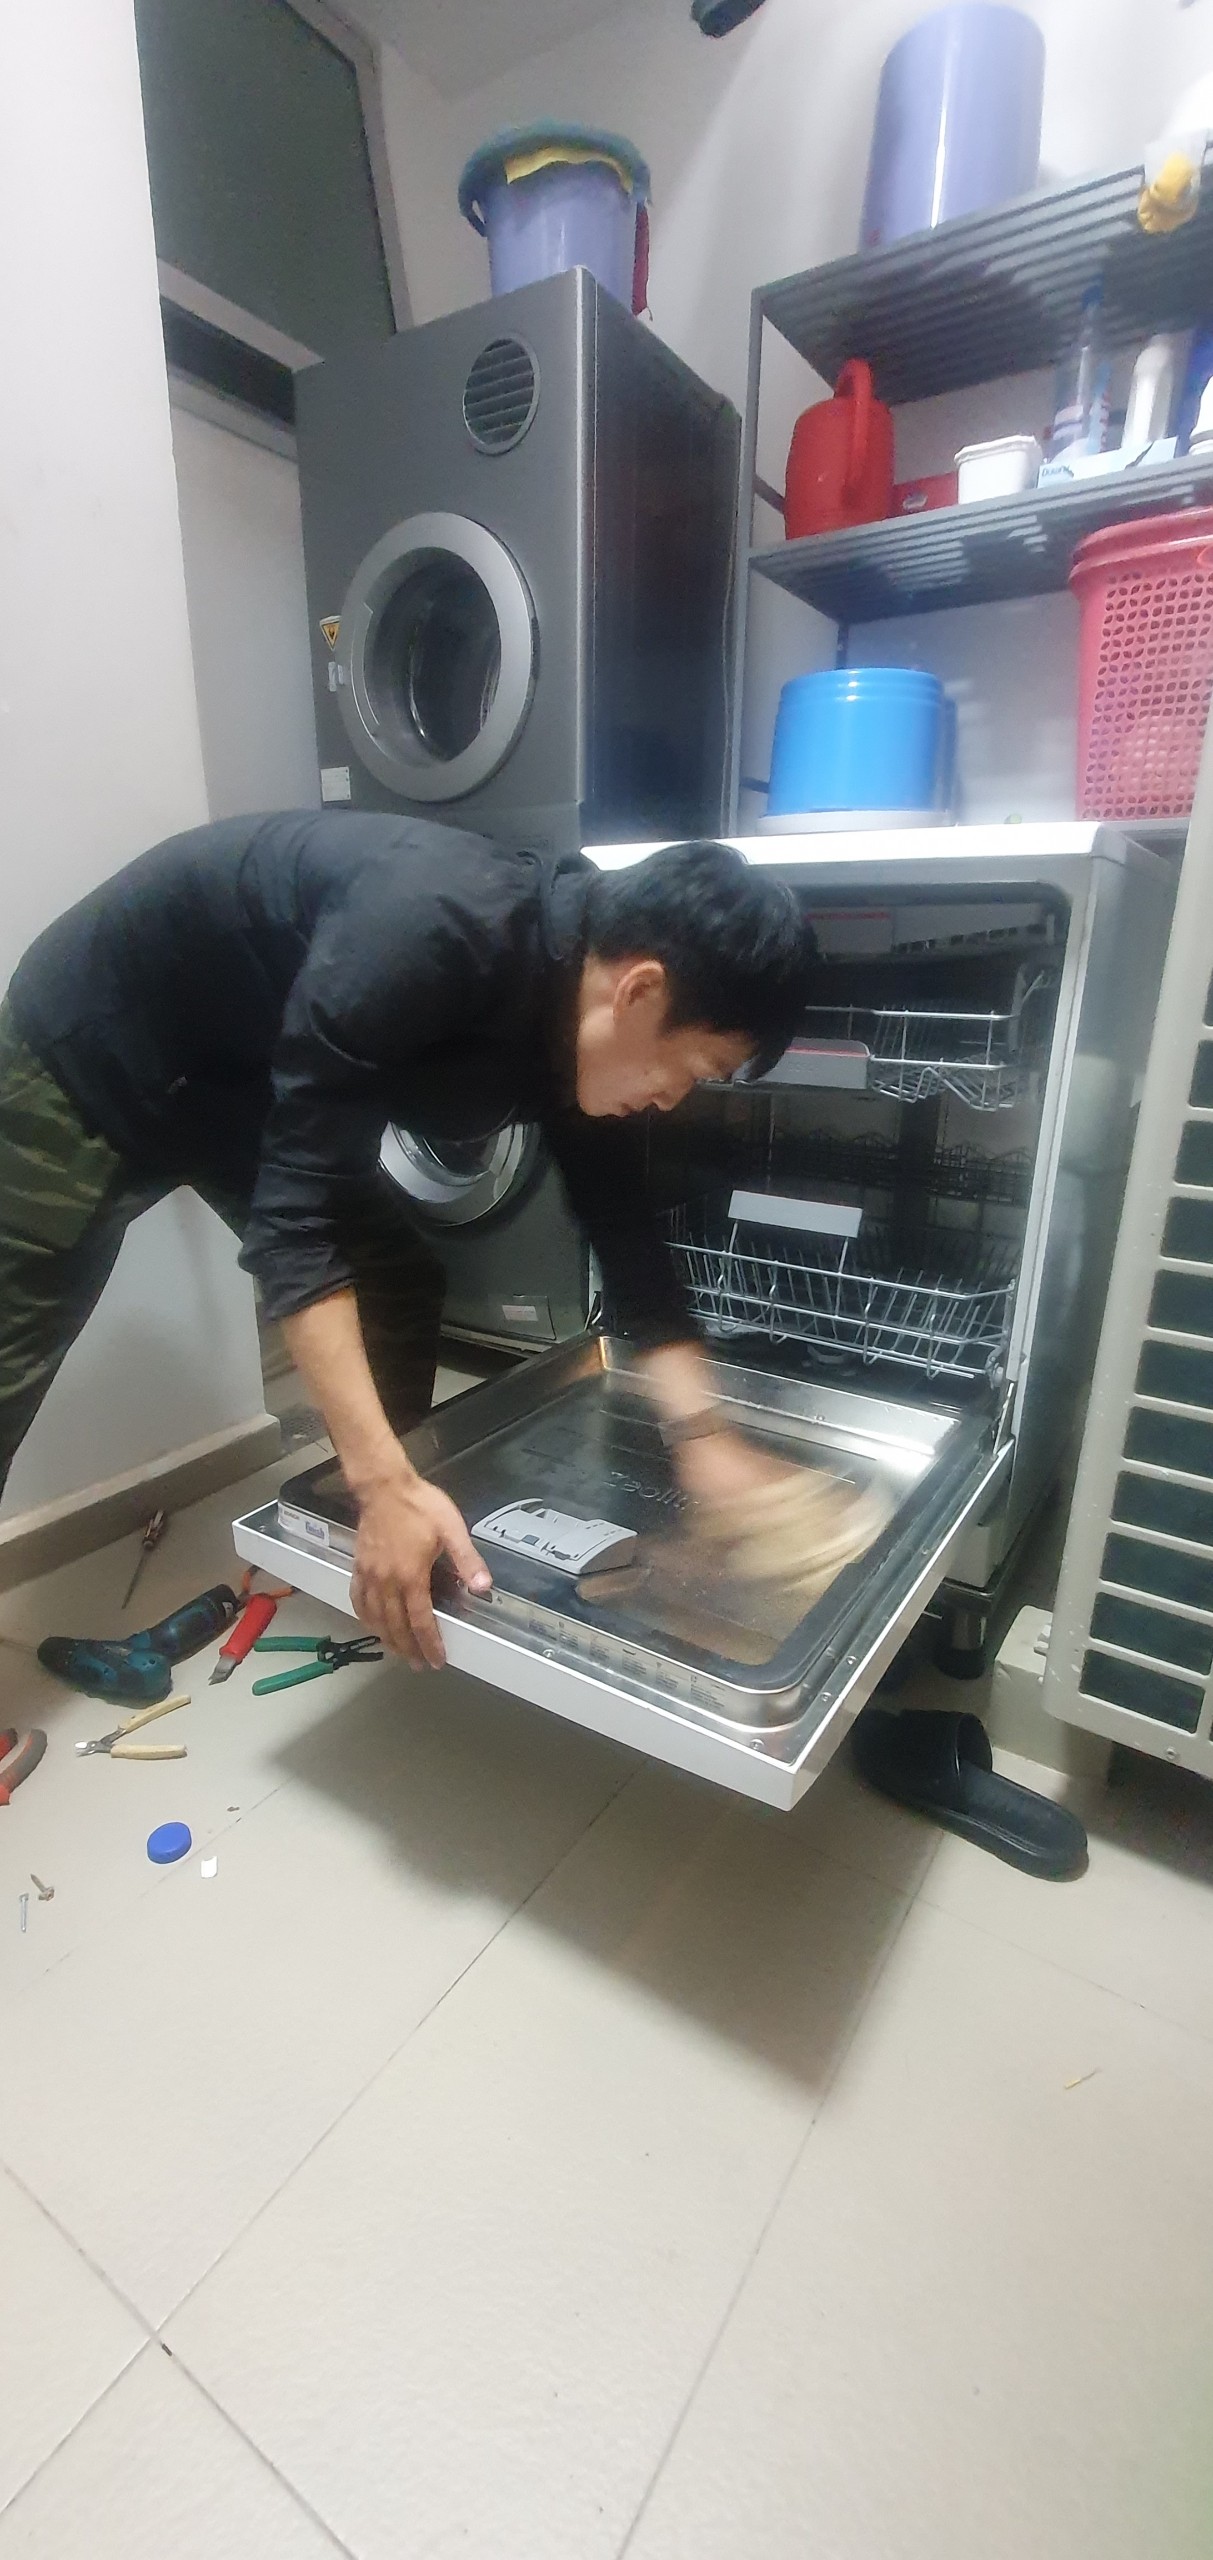 z4449111395020 a8f18f99116fd58c1bfe274cf9033373 - Sửa máy rửa bát bị mất nước nóng tại quận 7 Sài Gòn